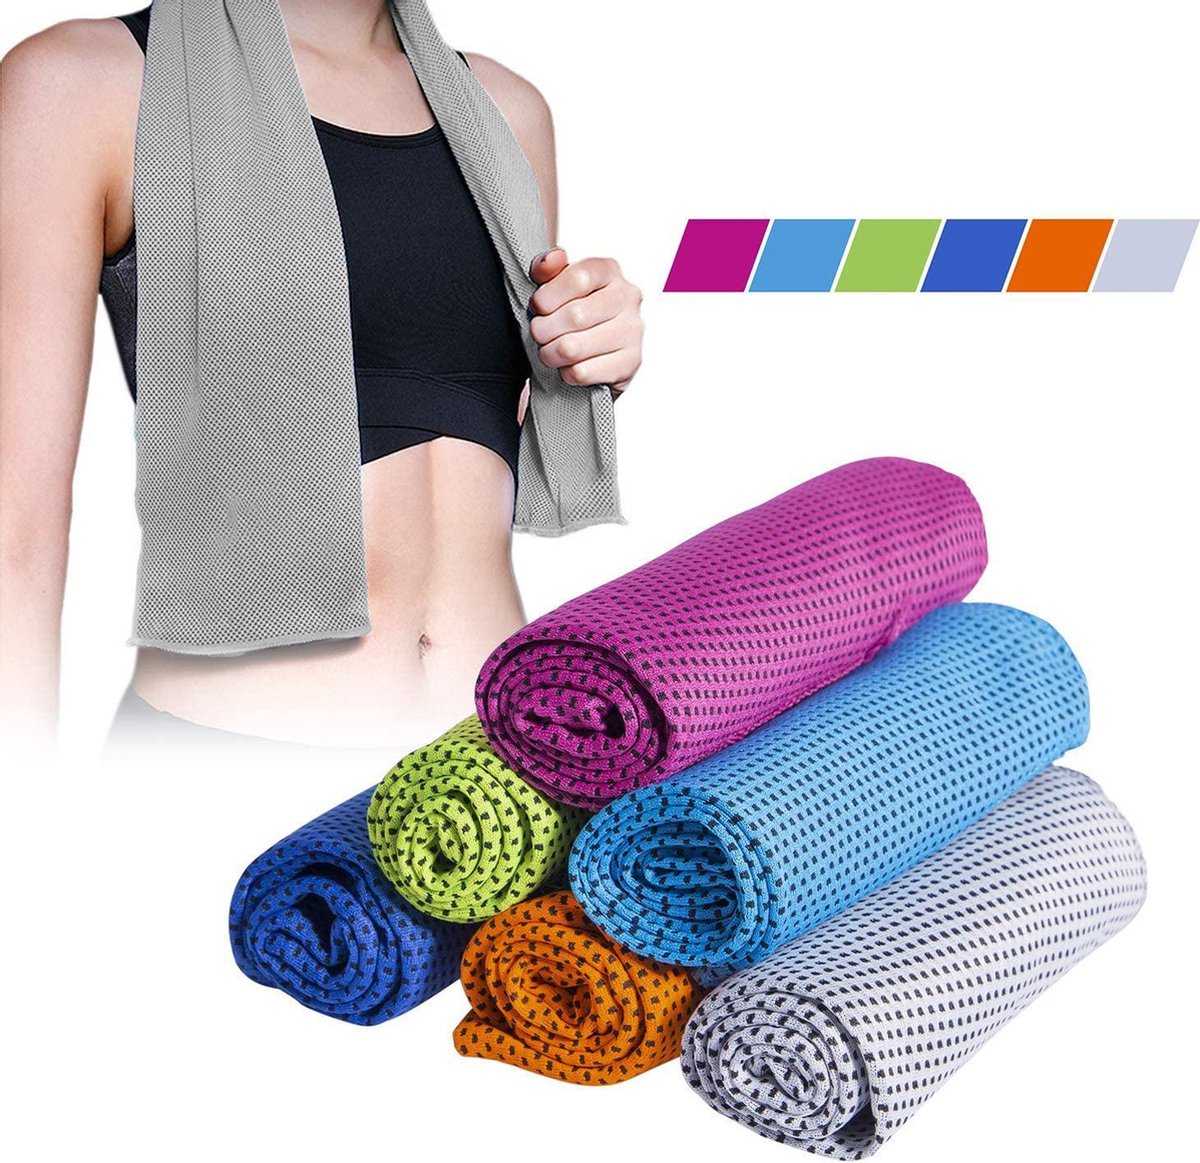 Verkoelende Handdoek - Koel - Cooling Towel - Sport - Fitness Handdoek - Grijs